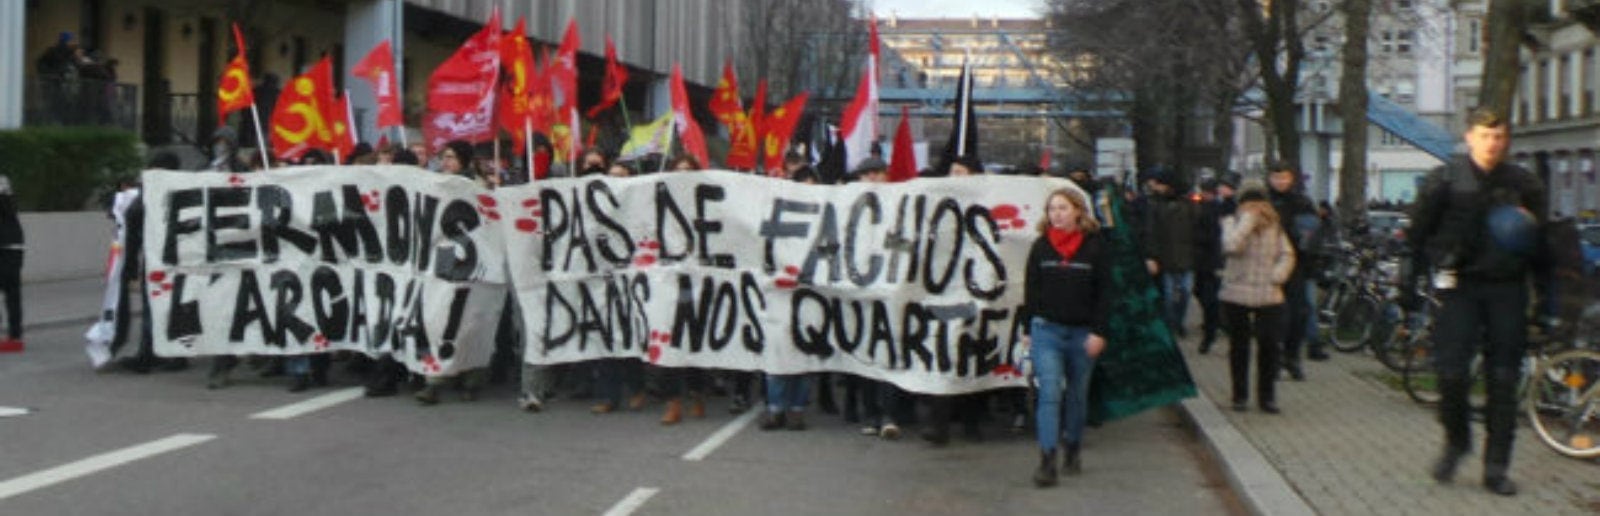 Deuxième manifestation samedi pour la fermeture de l’Arcadia à Strasbourg